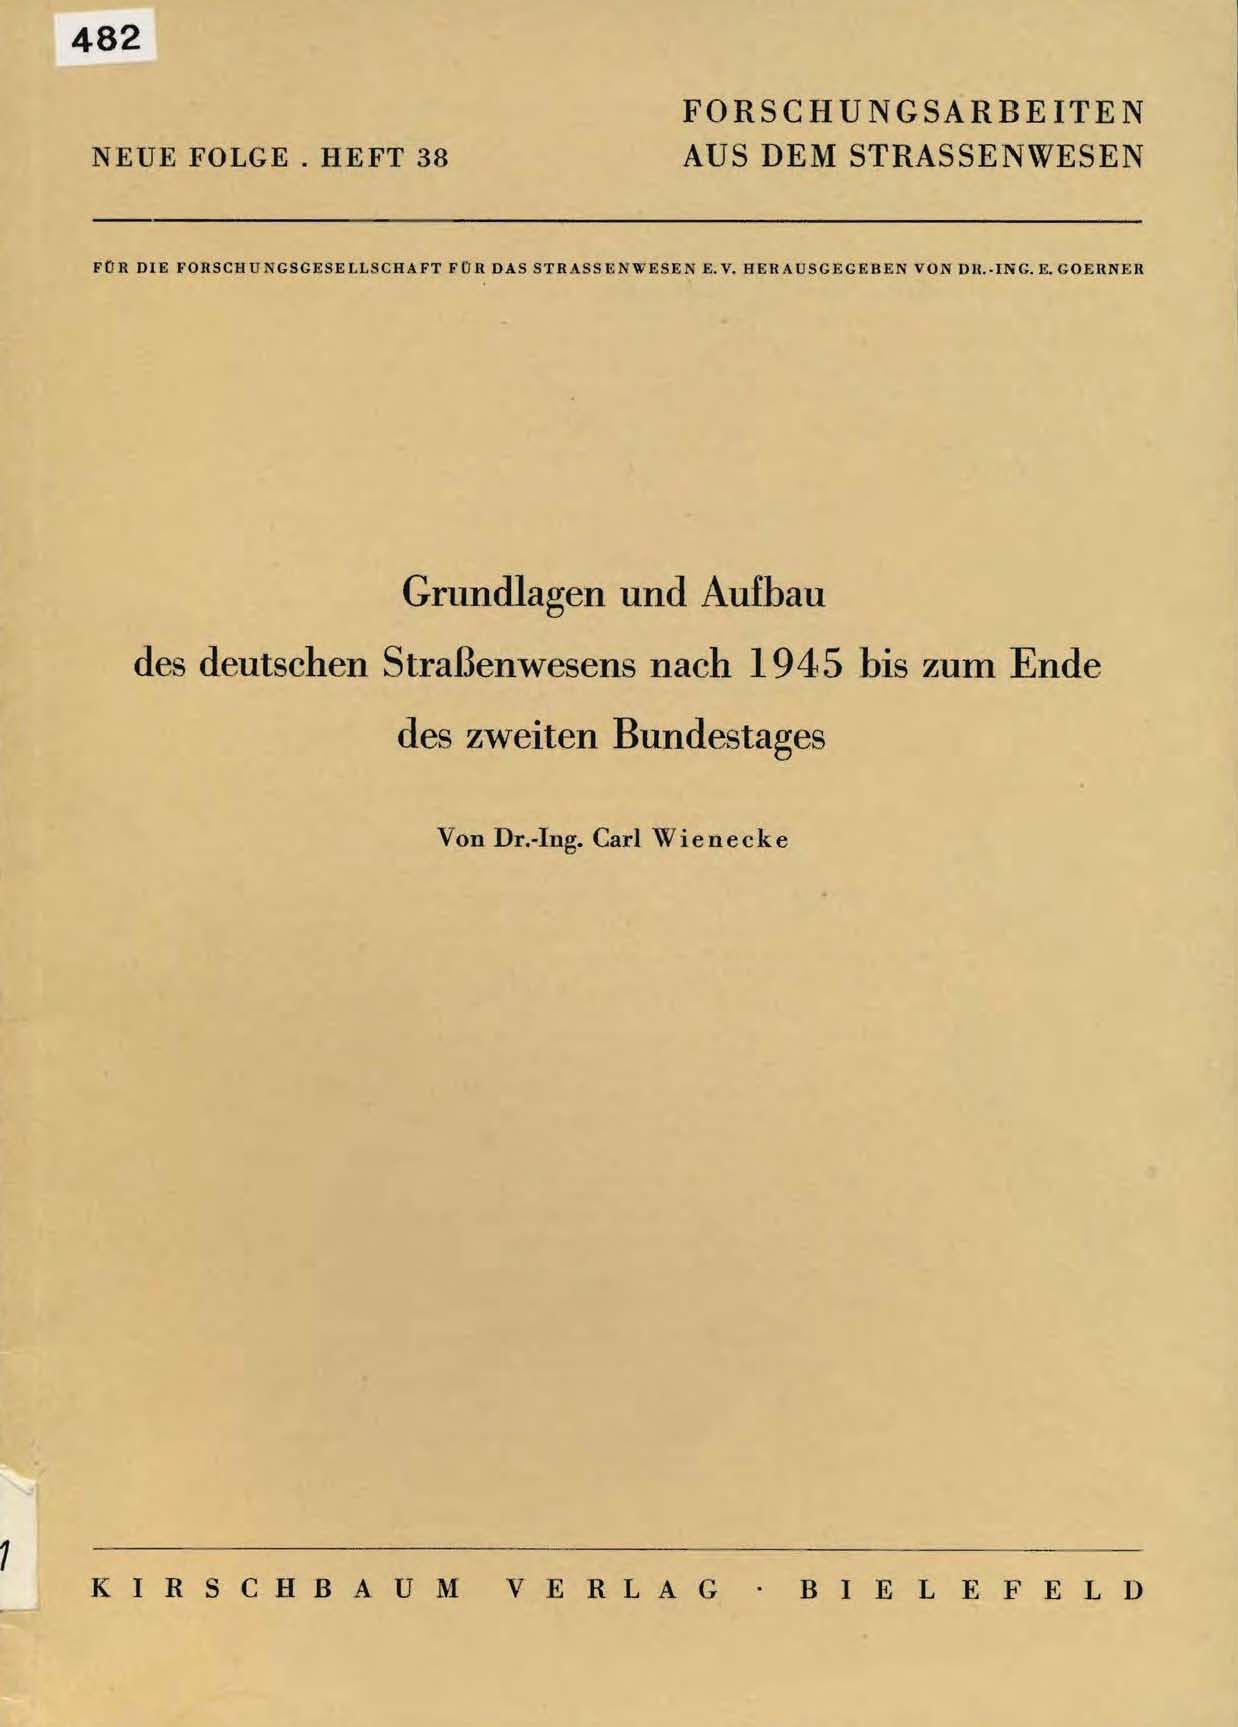 Grundlagen und Aufbau des deutschen Straßenwsens nach 1945 bis zum Ende des zweiten Bundestages